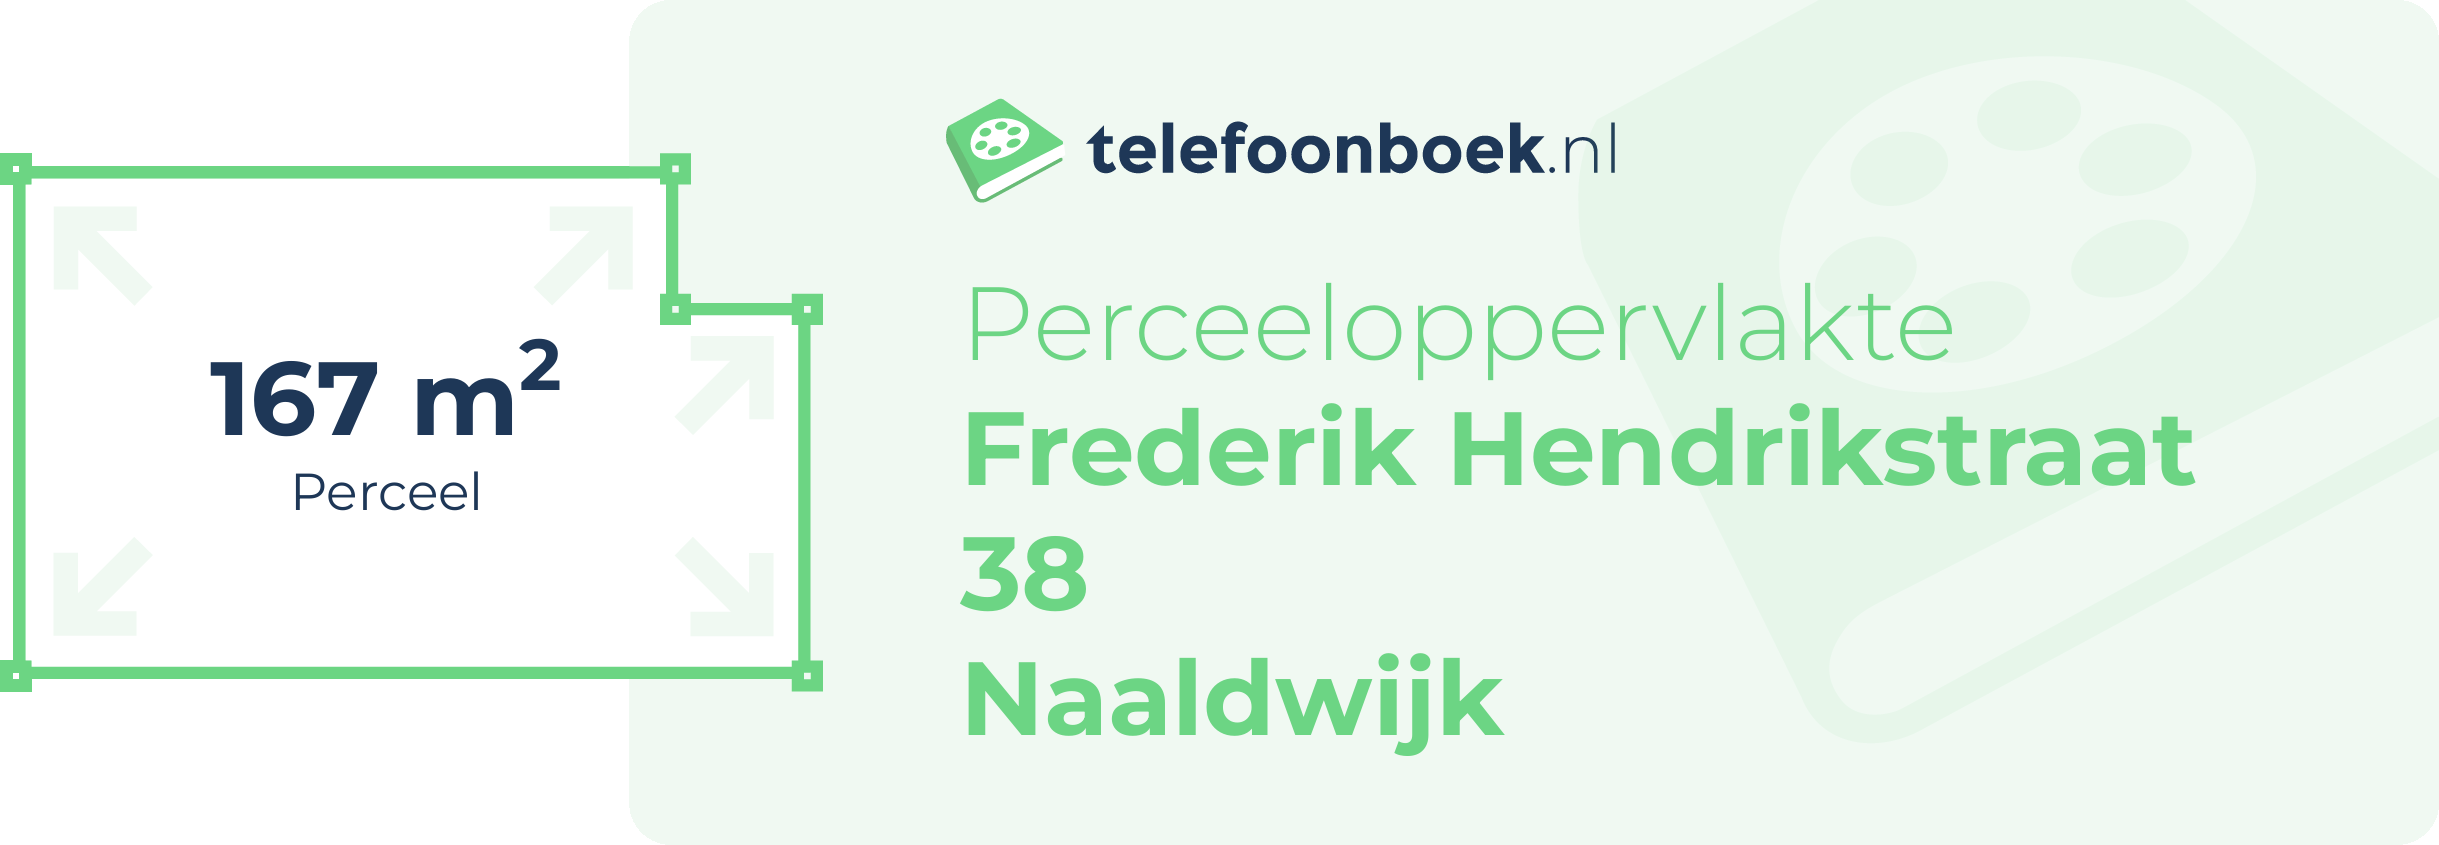 Perceeloppervlakte Frederik Hendrikstraat 38 Naaldwijk